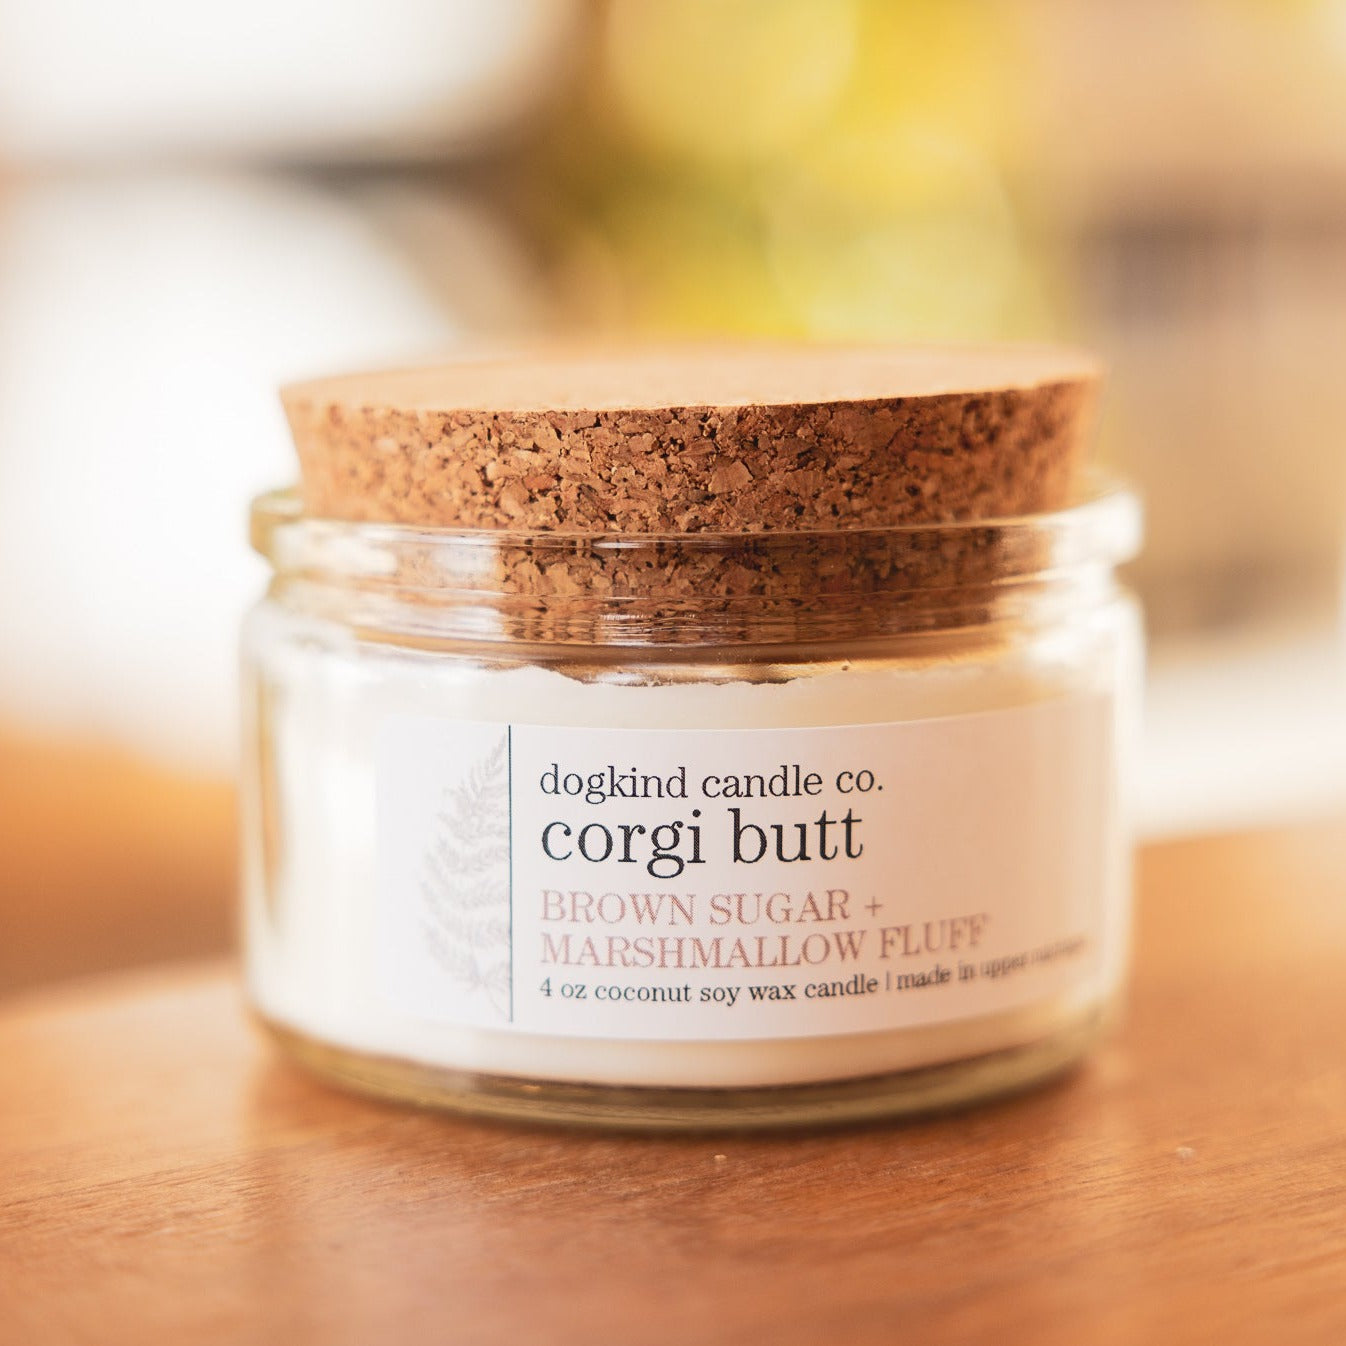 
                  
                    corgi butt - brown sugar + marshmallow fluff
                  
                